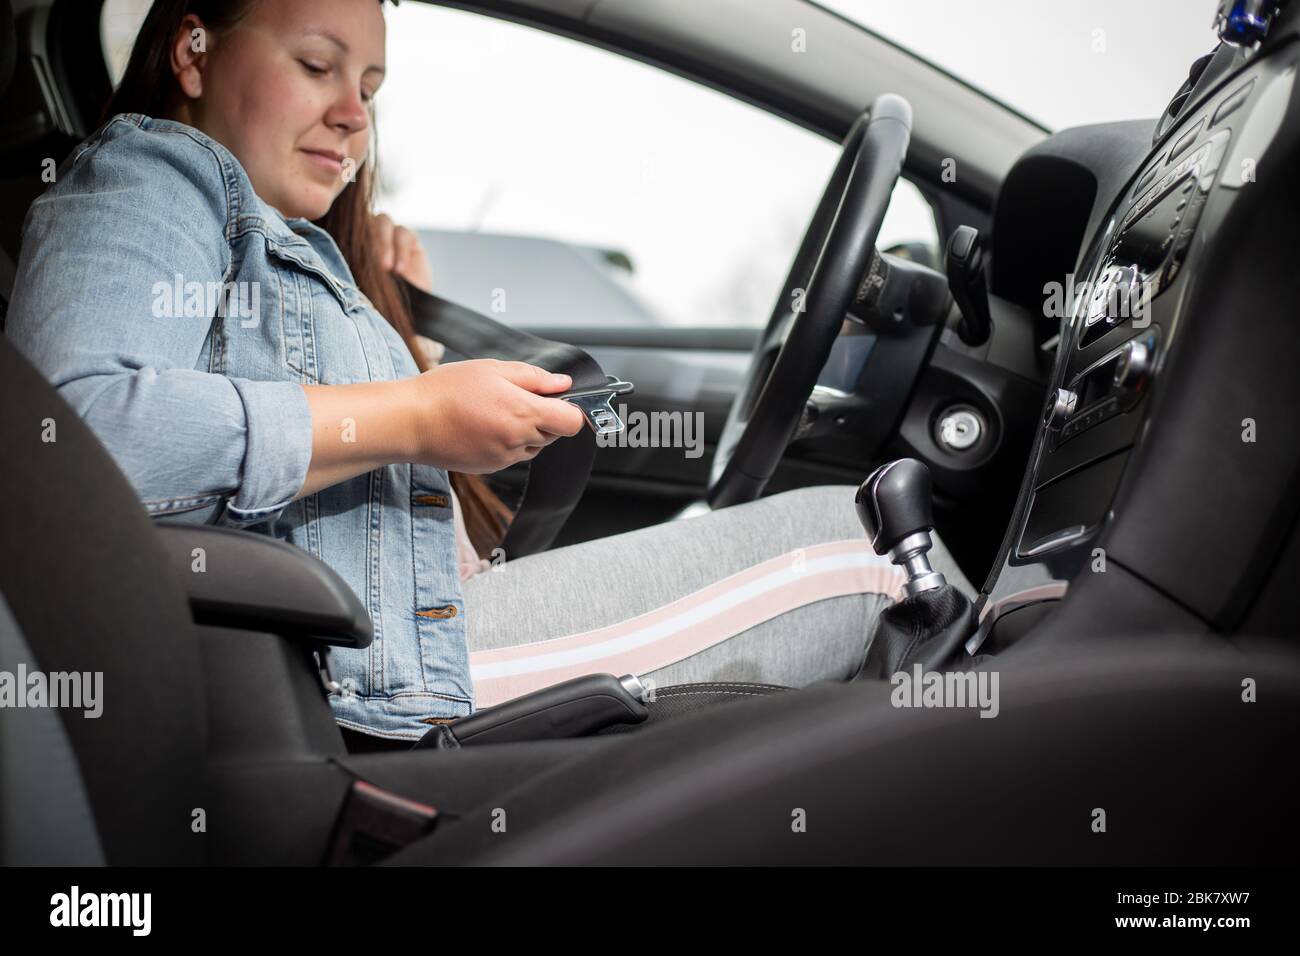 Gurtschnalle. Sicherheitssystem Im Auto. Stockfoto - Bild von erweiterung,  automobil: 246927906